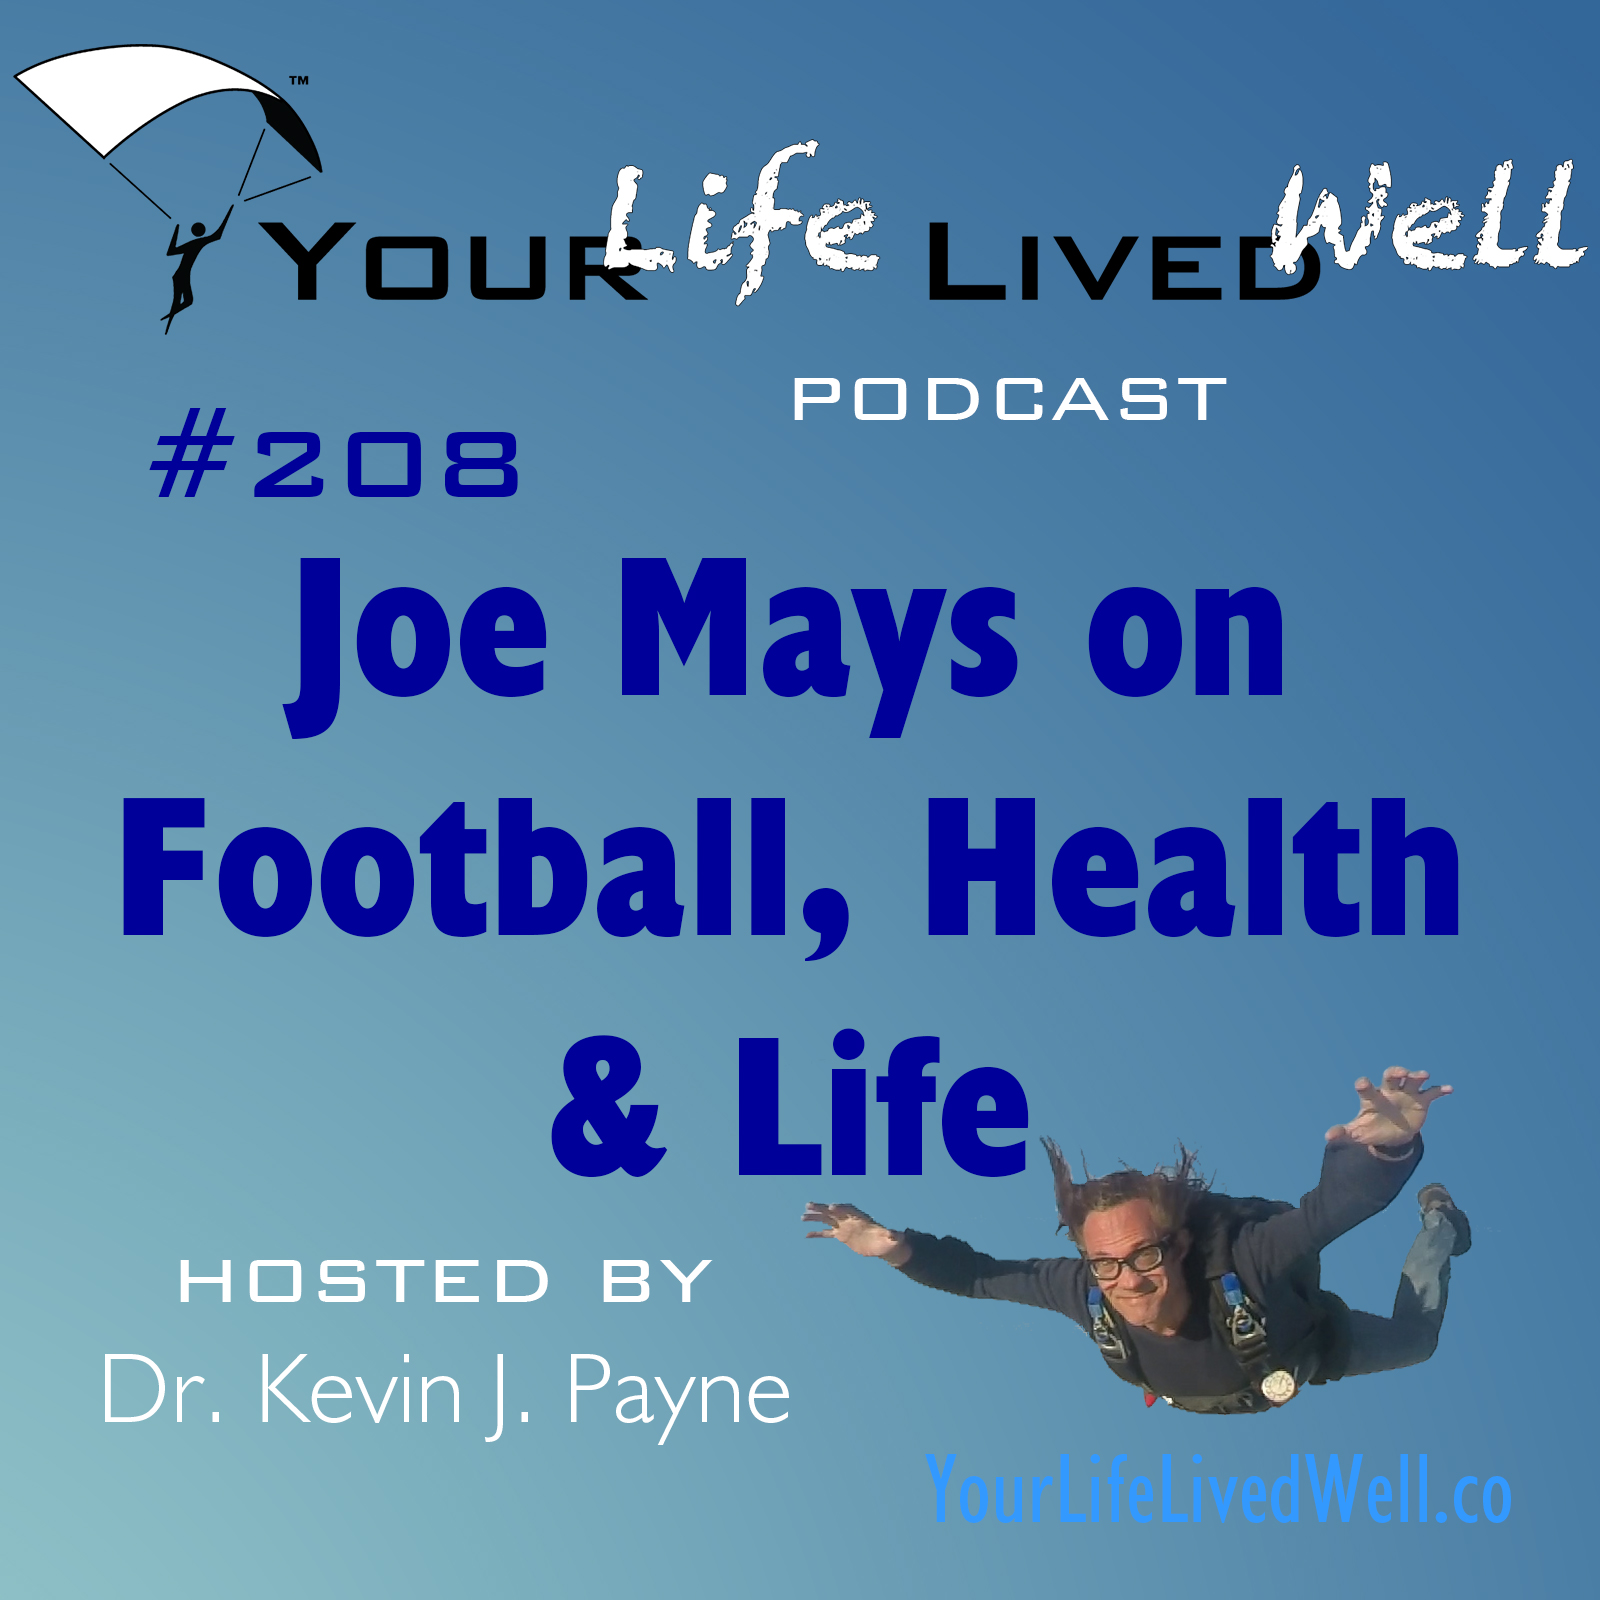 Joe Mays on Football, Health & Life